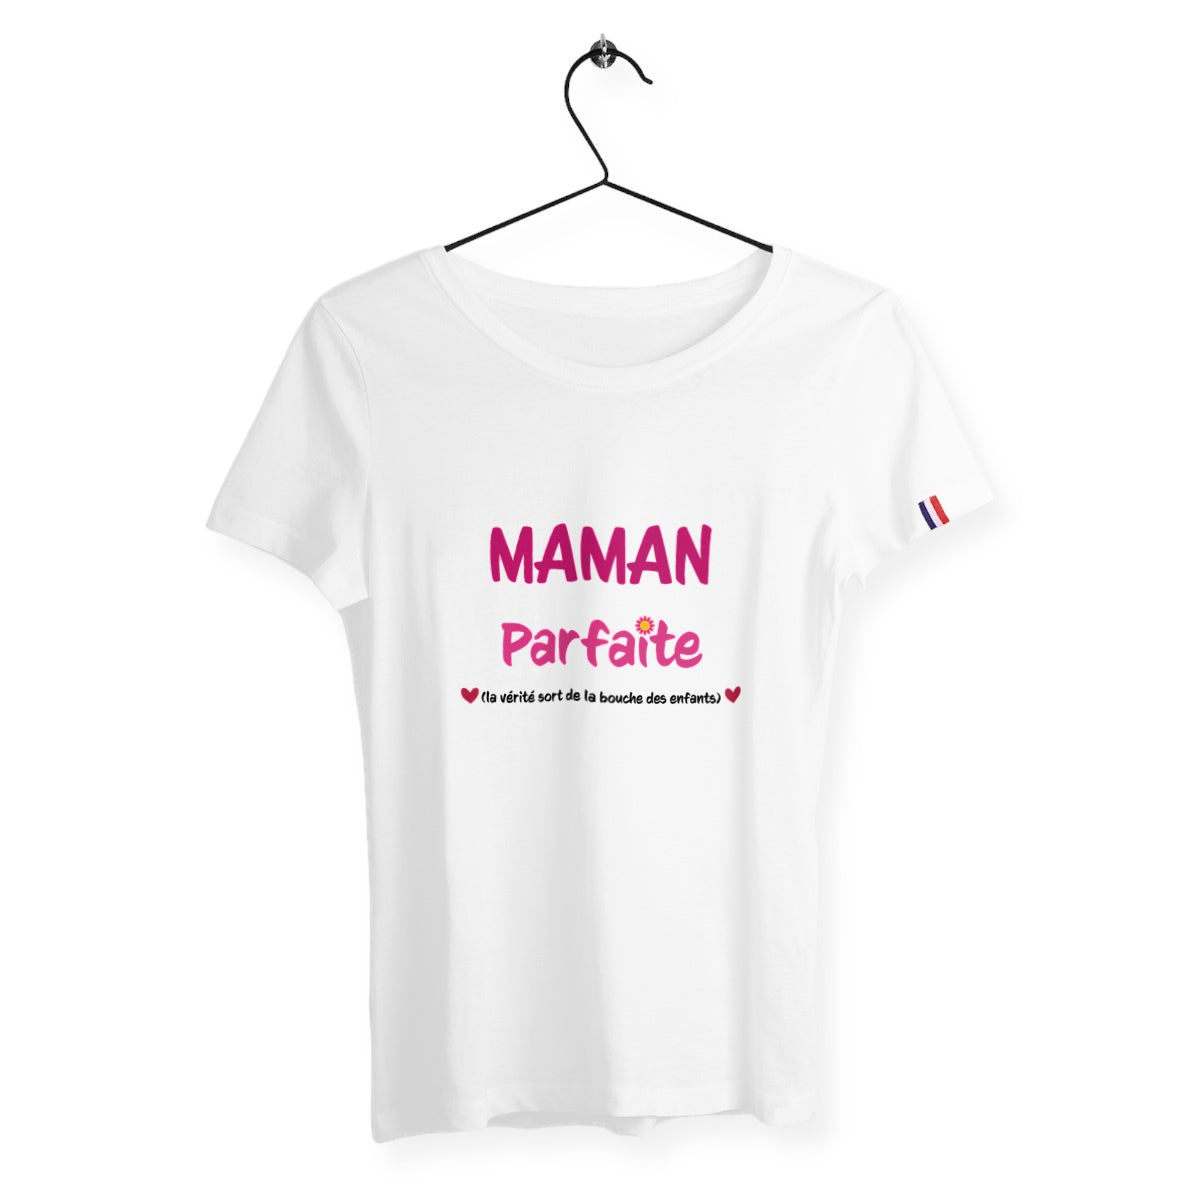 T-shirt femme maman parfaite France édition